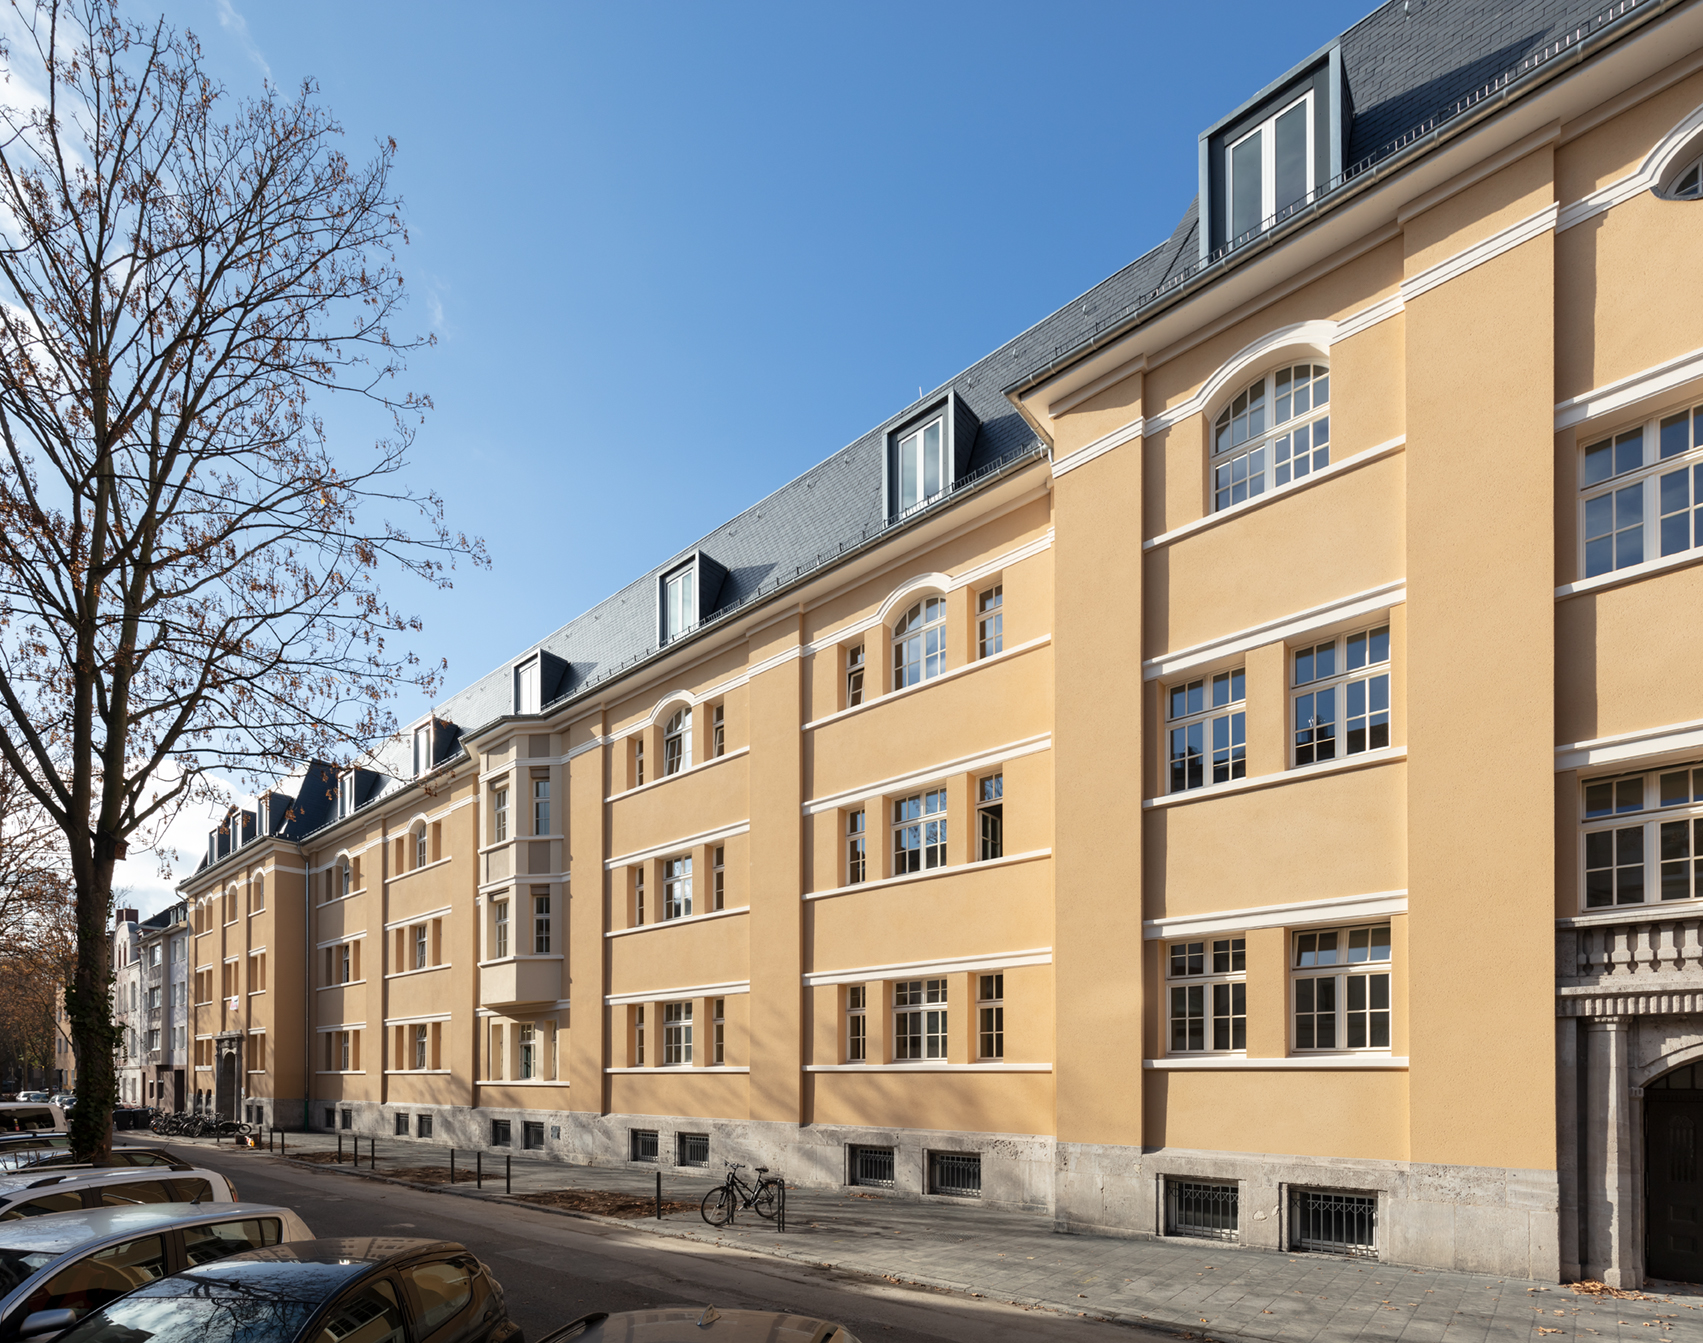 Sanierung und Umbau des denkmalgeschützten Schulgebäudes Overbeckstraße in Köln